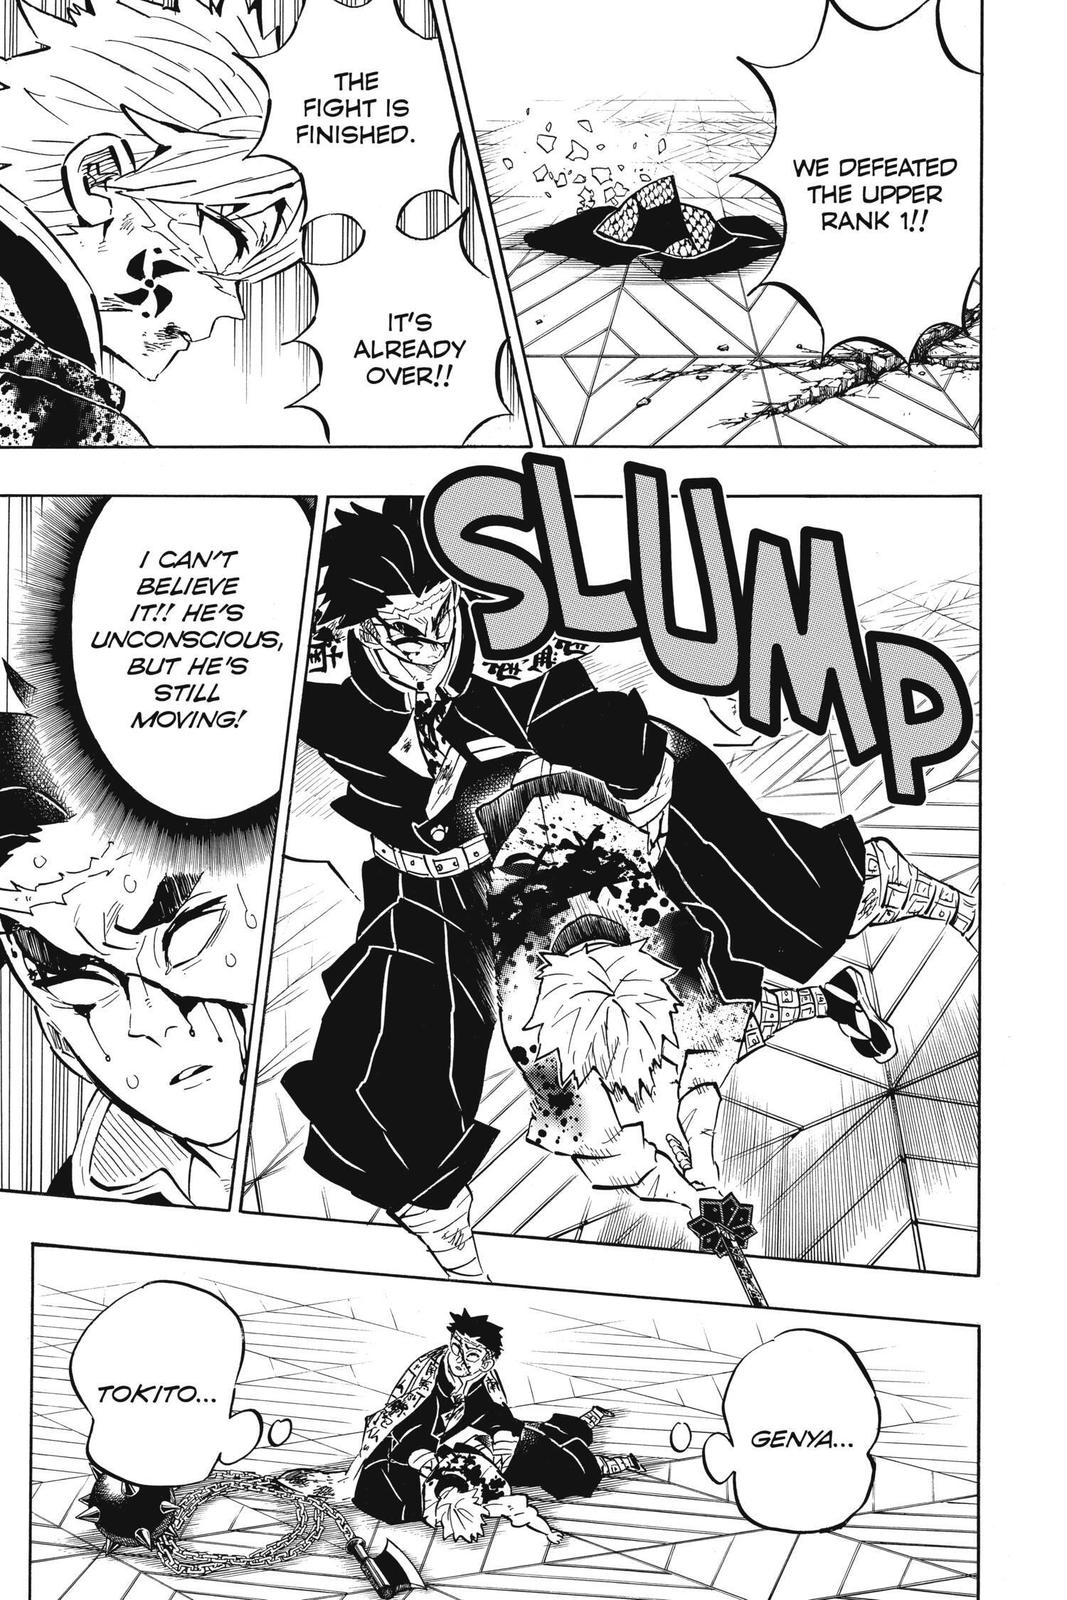 Demon Slayer Manga Manga Chapter - 179 - image 3